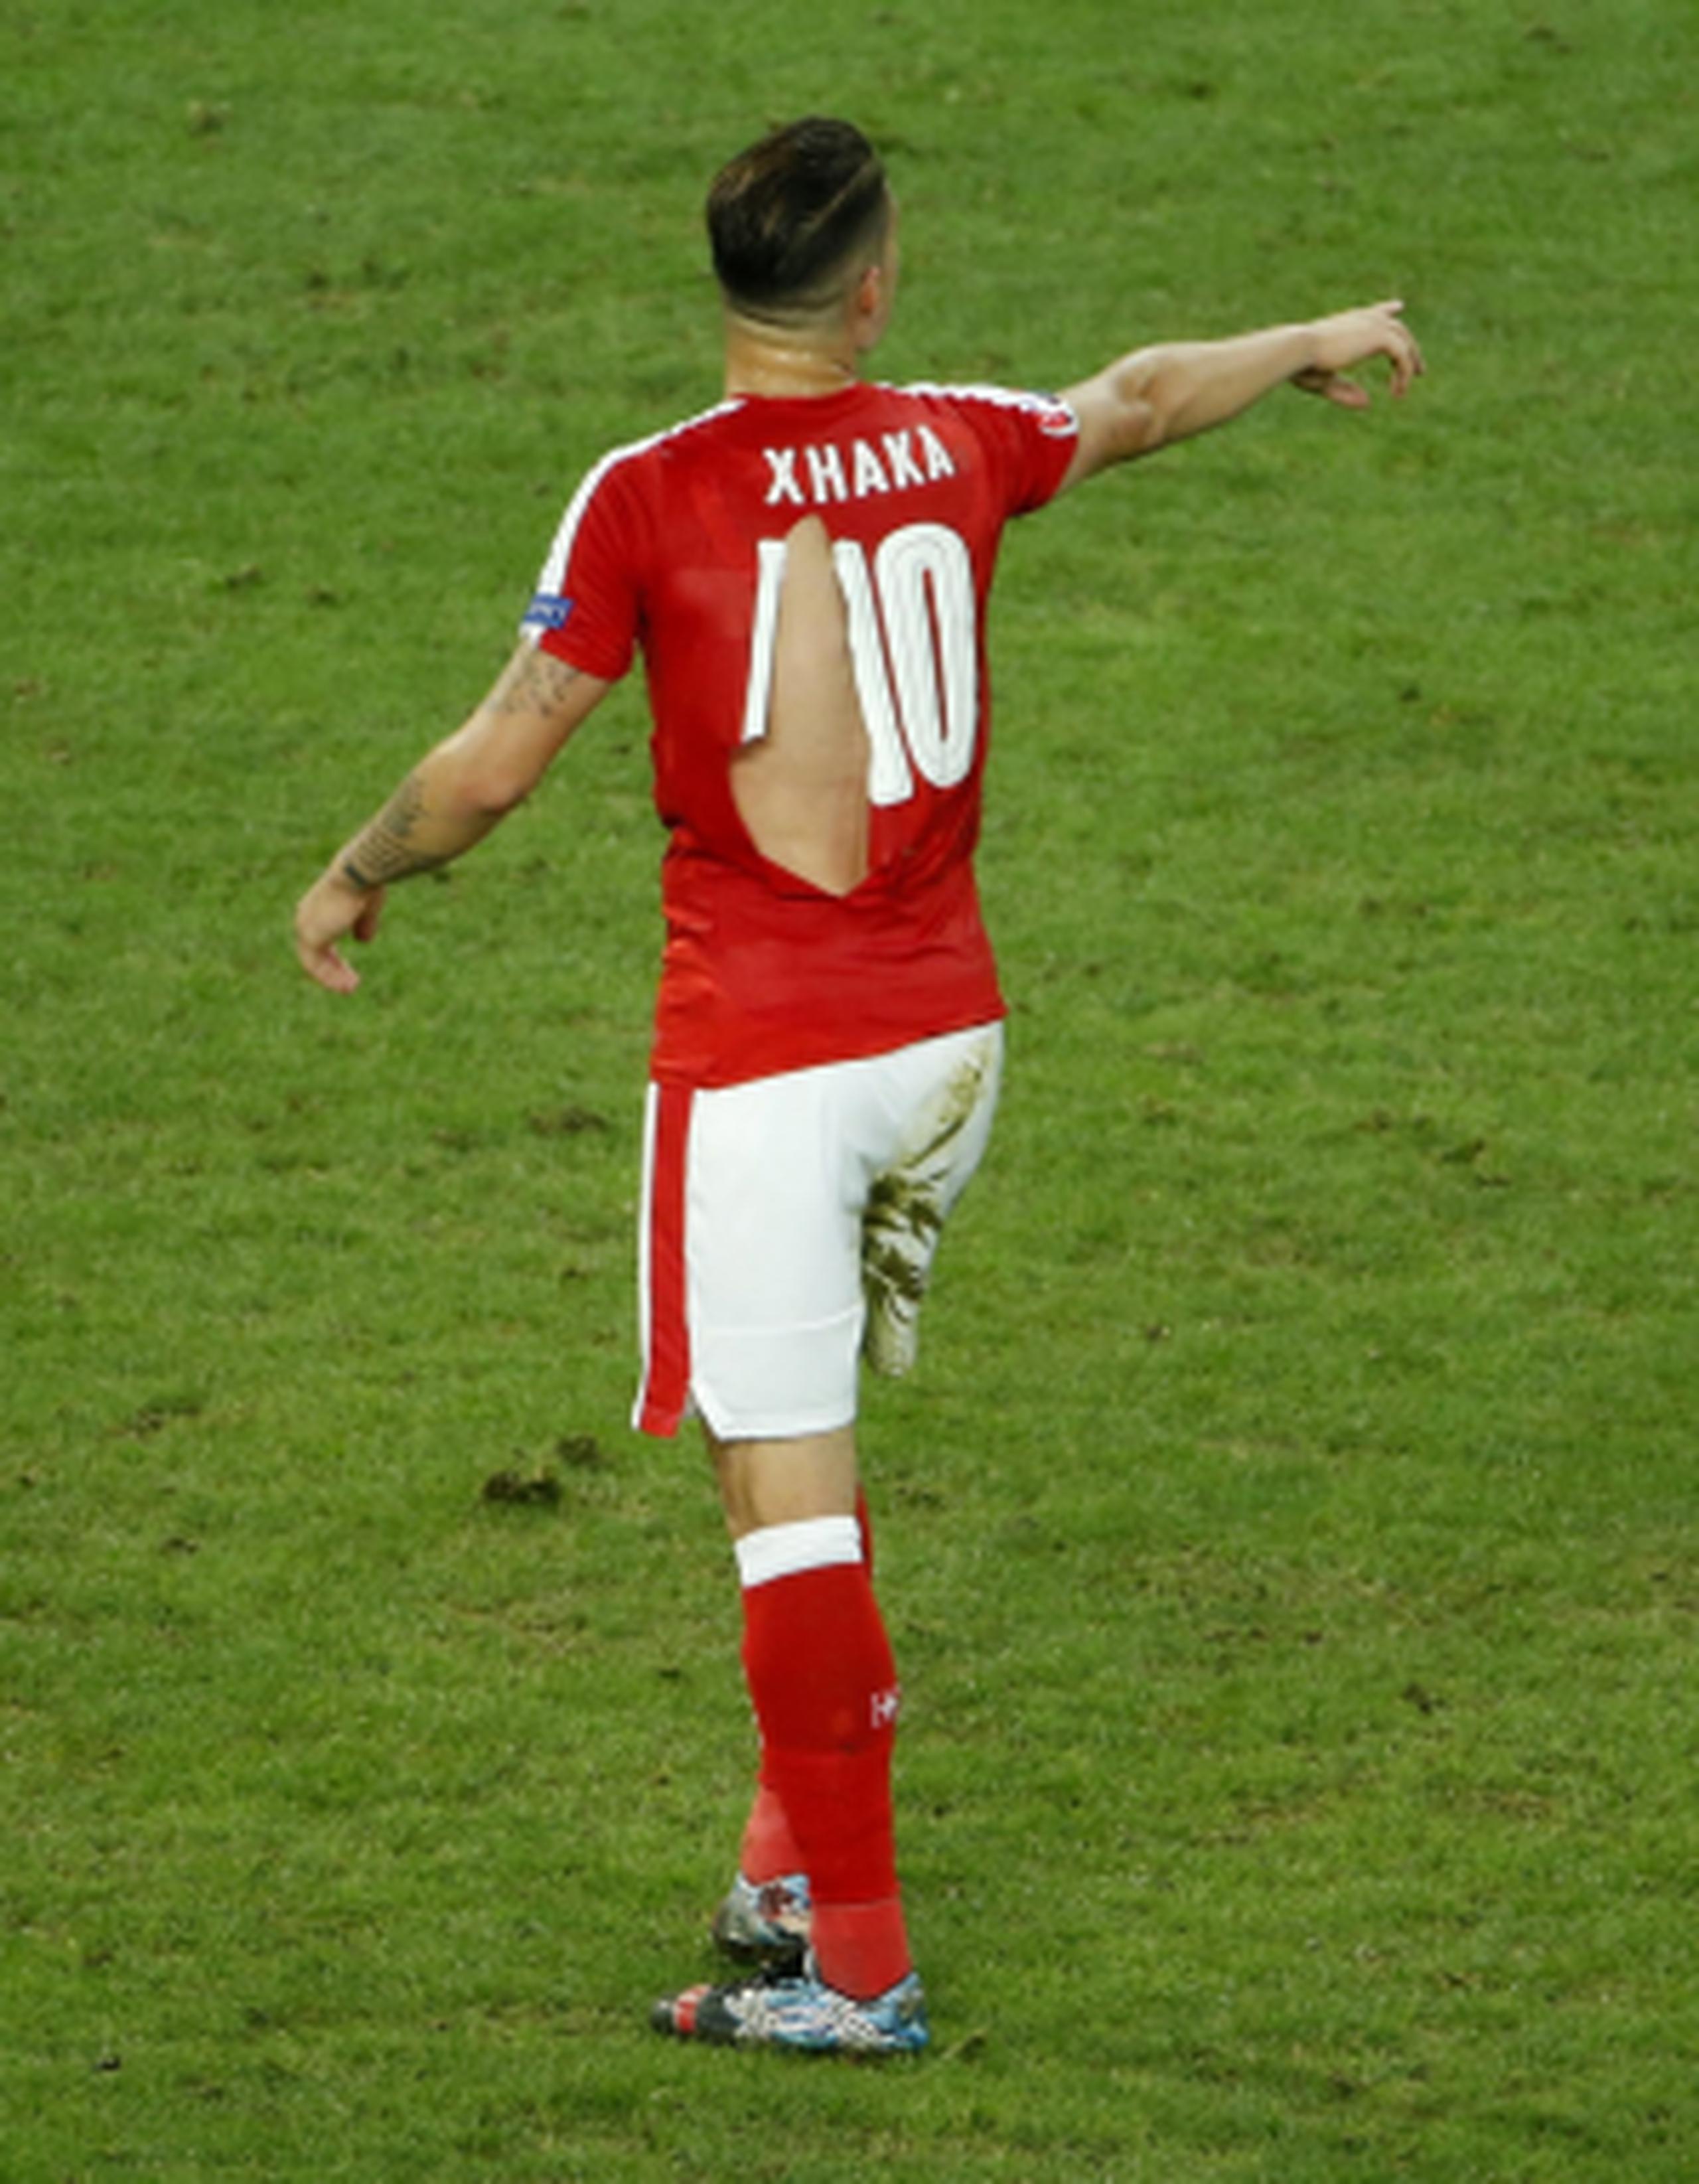 Granit Xhaka fue uno de los jugadores de la selección suiza que tuvo percances con su camiseta en el partido contra Francia. (EFE/EPA/SHAWN THEW)